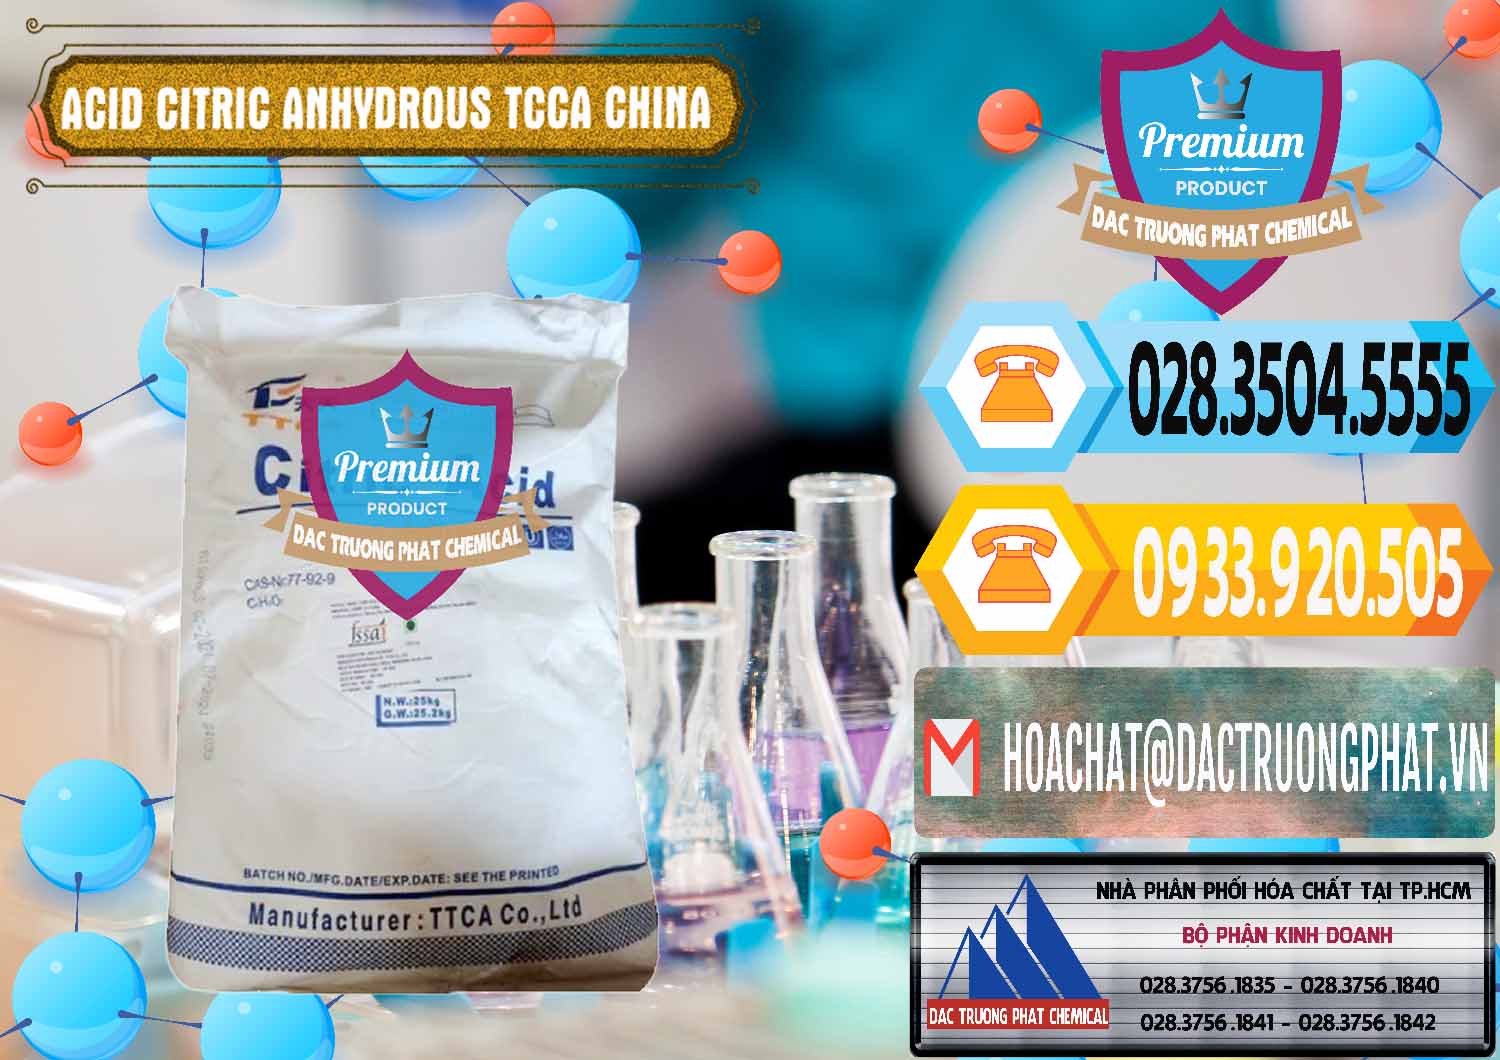 Nơi chuyên cung ứng ( bán ) Acid Citric - Axit Citric Anhydrous TCCA Trung Quốc China - 0442 - Nơi chuyên phân phối & nhập khẩu hóa chất tại TP.HCM - hoachattayrua.net